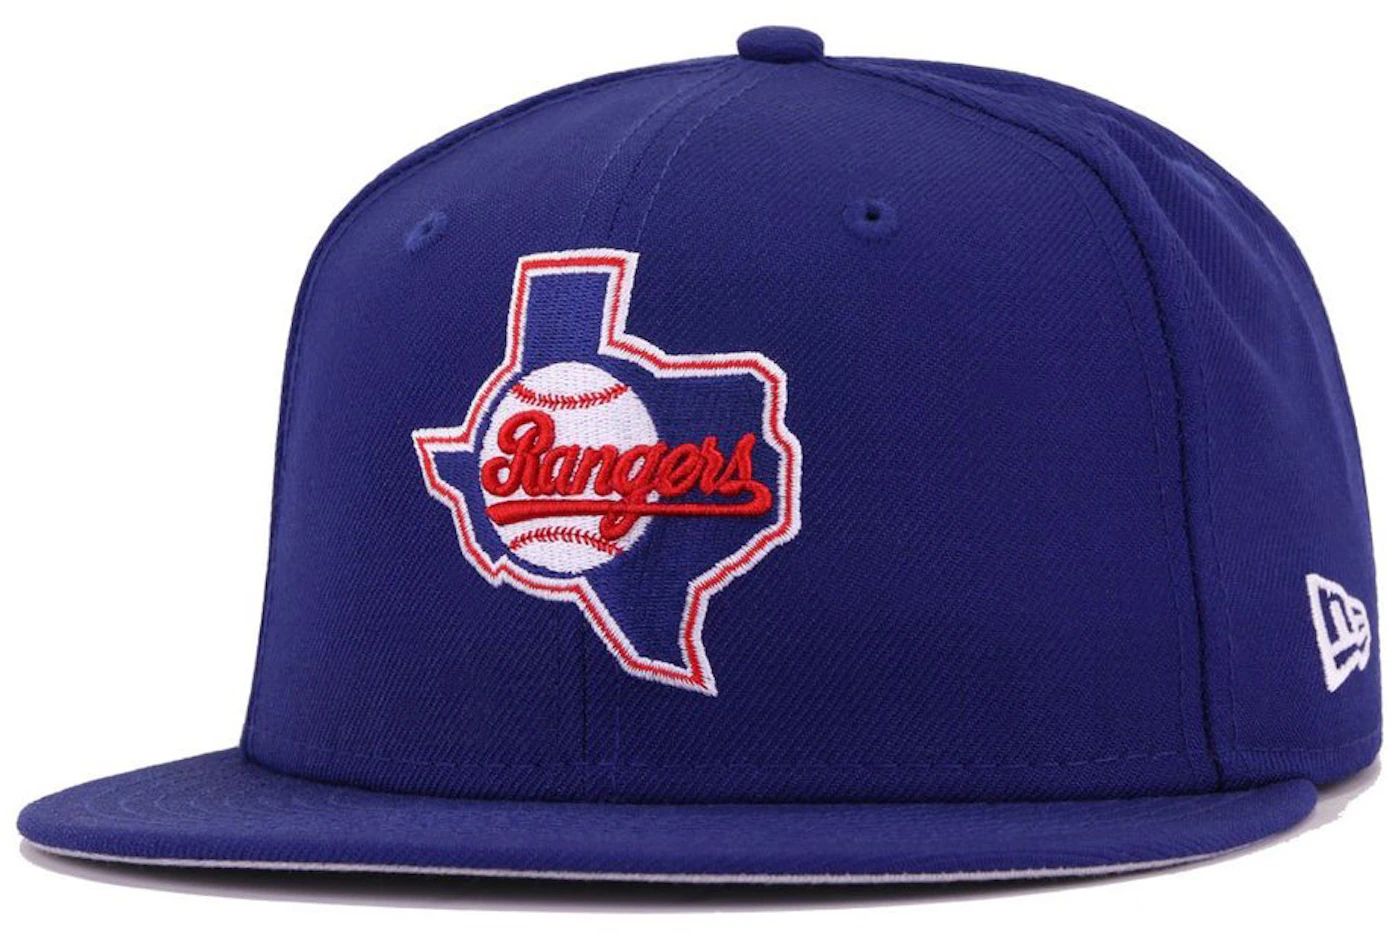 New Era x Politics Texas Rangers Low Pro 59FIFTY Fitted Hat - Blue/Birdeye Blue - Blue Underbrim: Birdeye Blue, Size 7 1/2 by Sneaker Politics